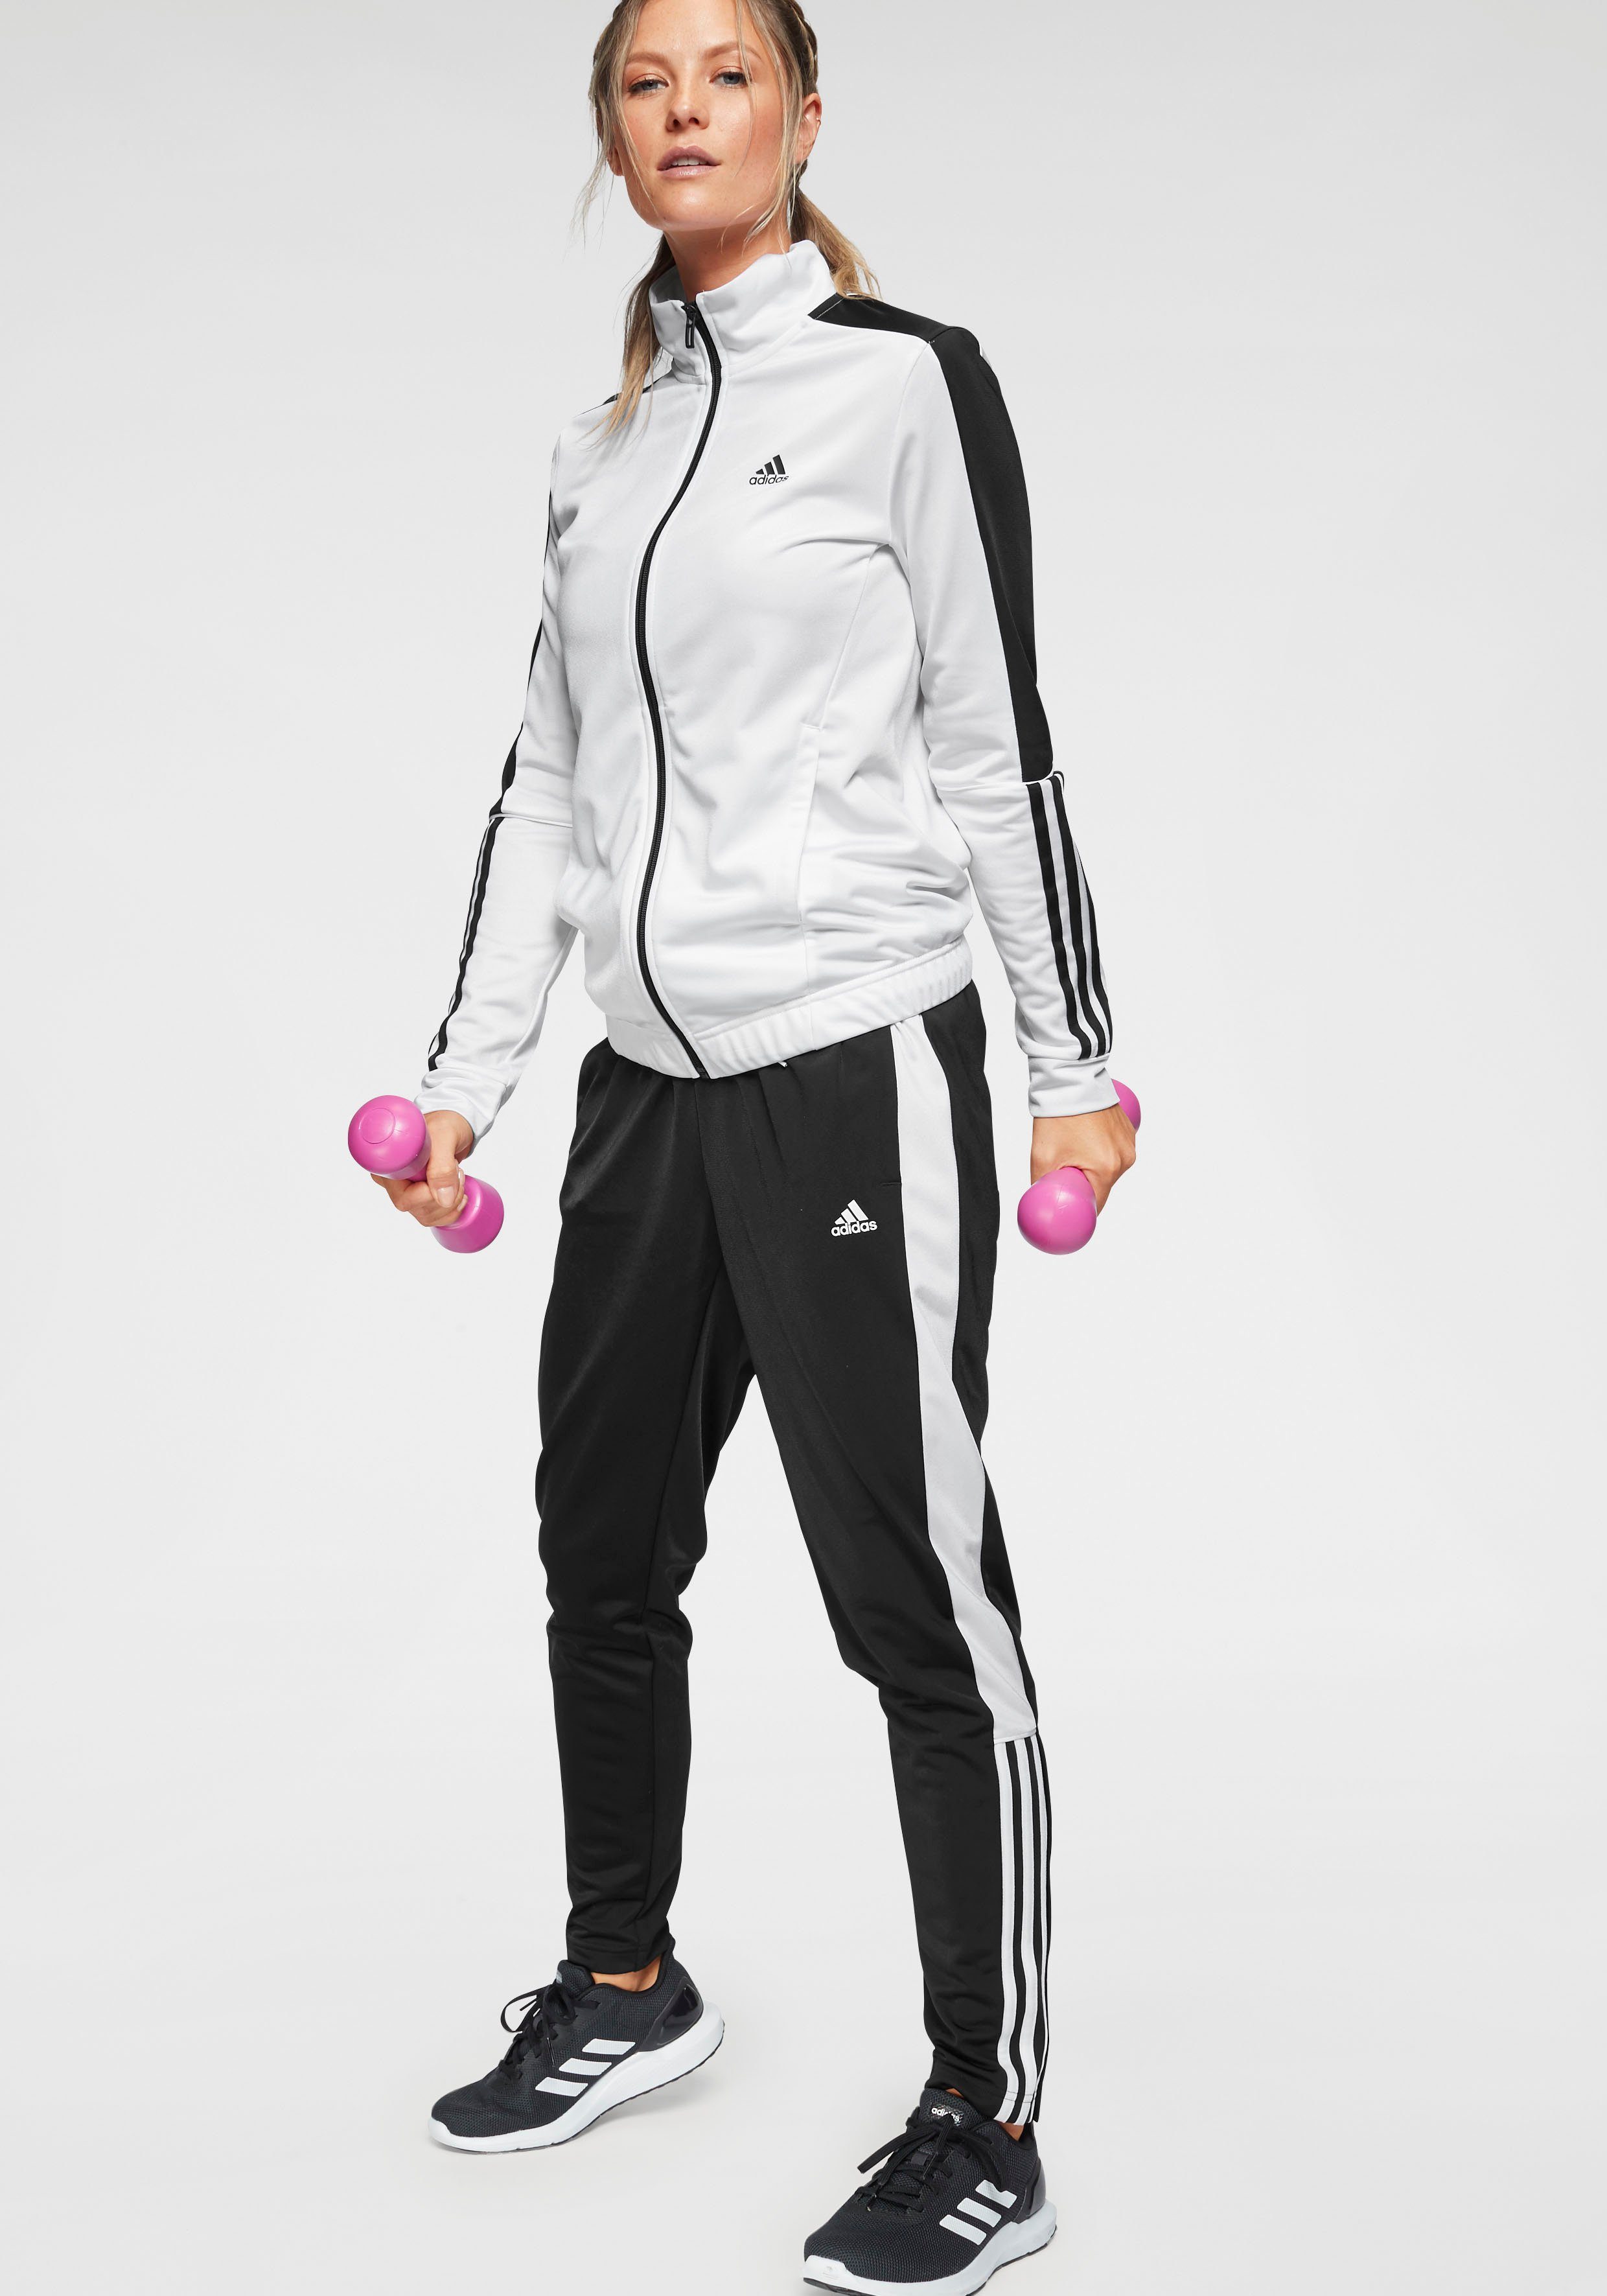 adidas Damen Sportbekleidung online kaufen | OTTO